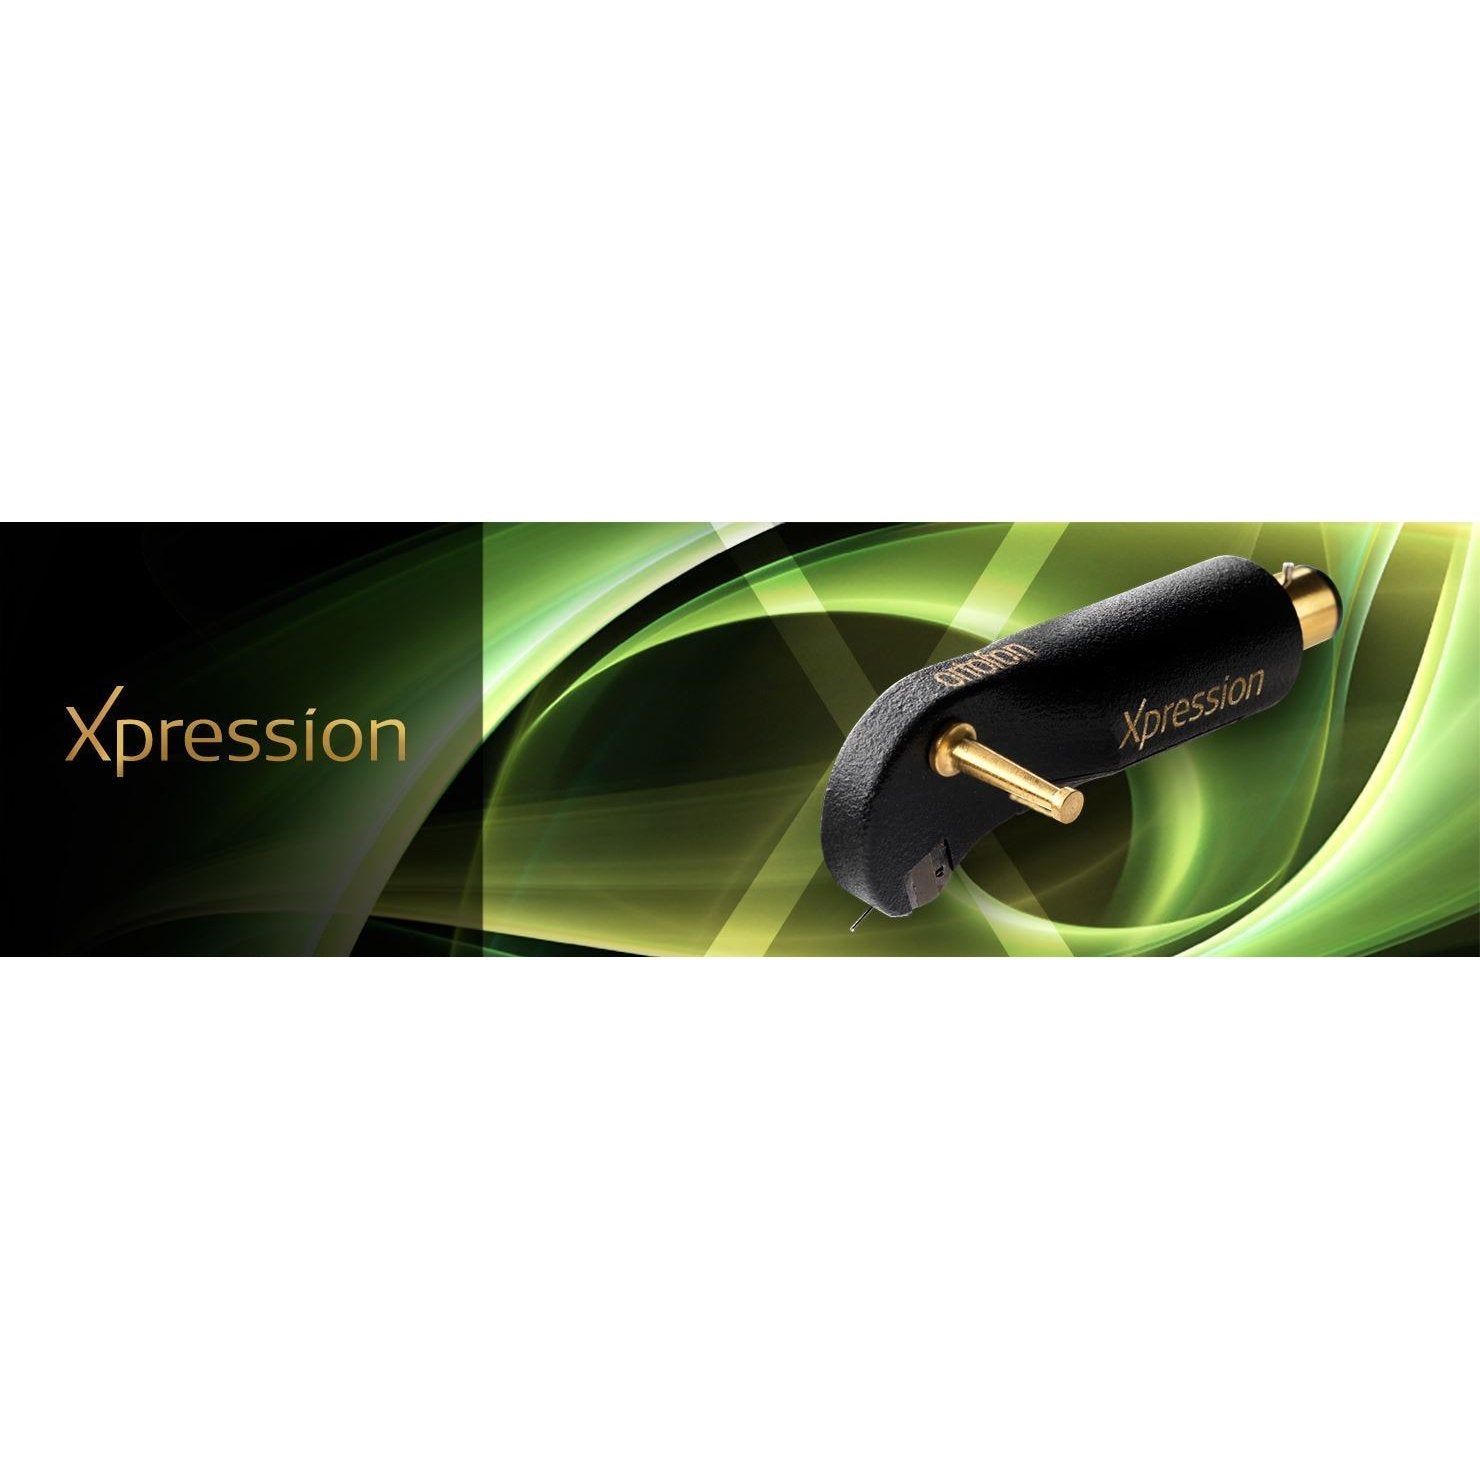 Ortofon - Hi-Fi Xpression - Moving Coil Cartridge Australia